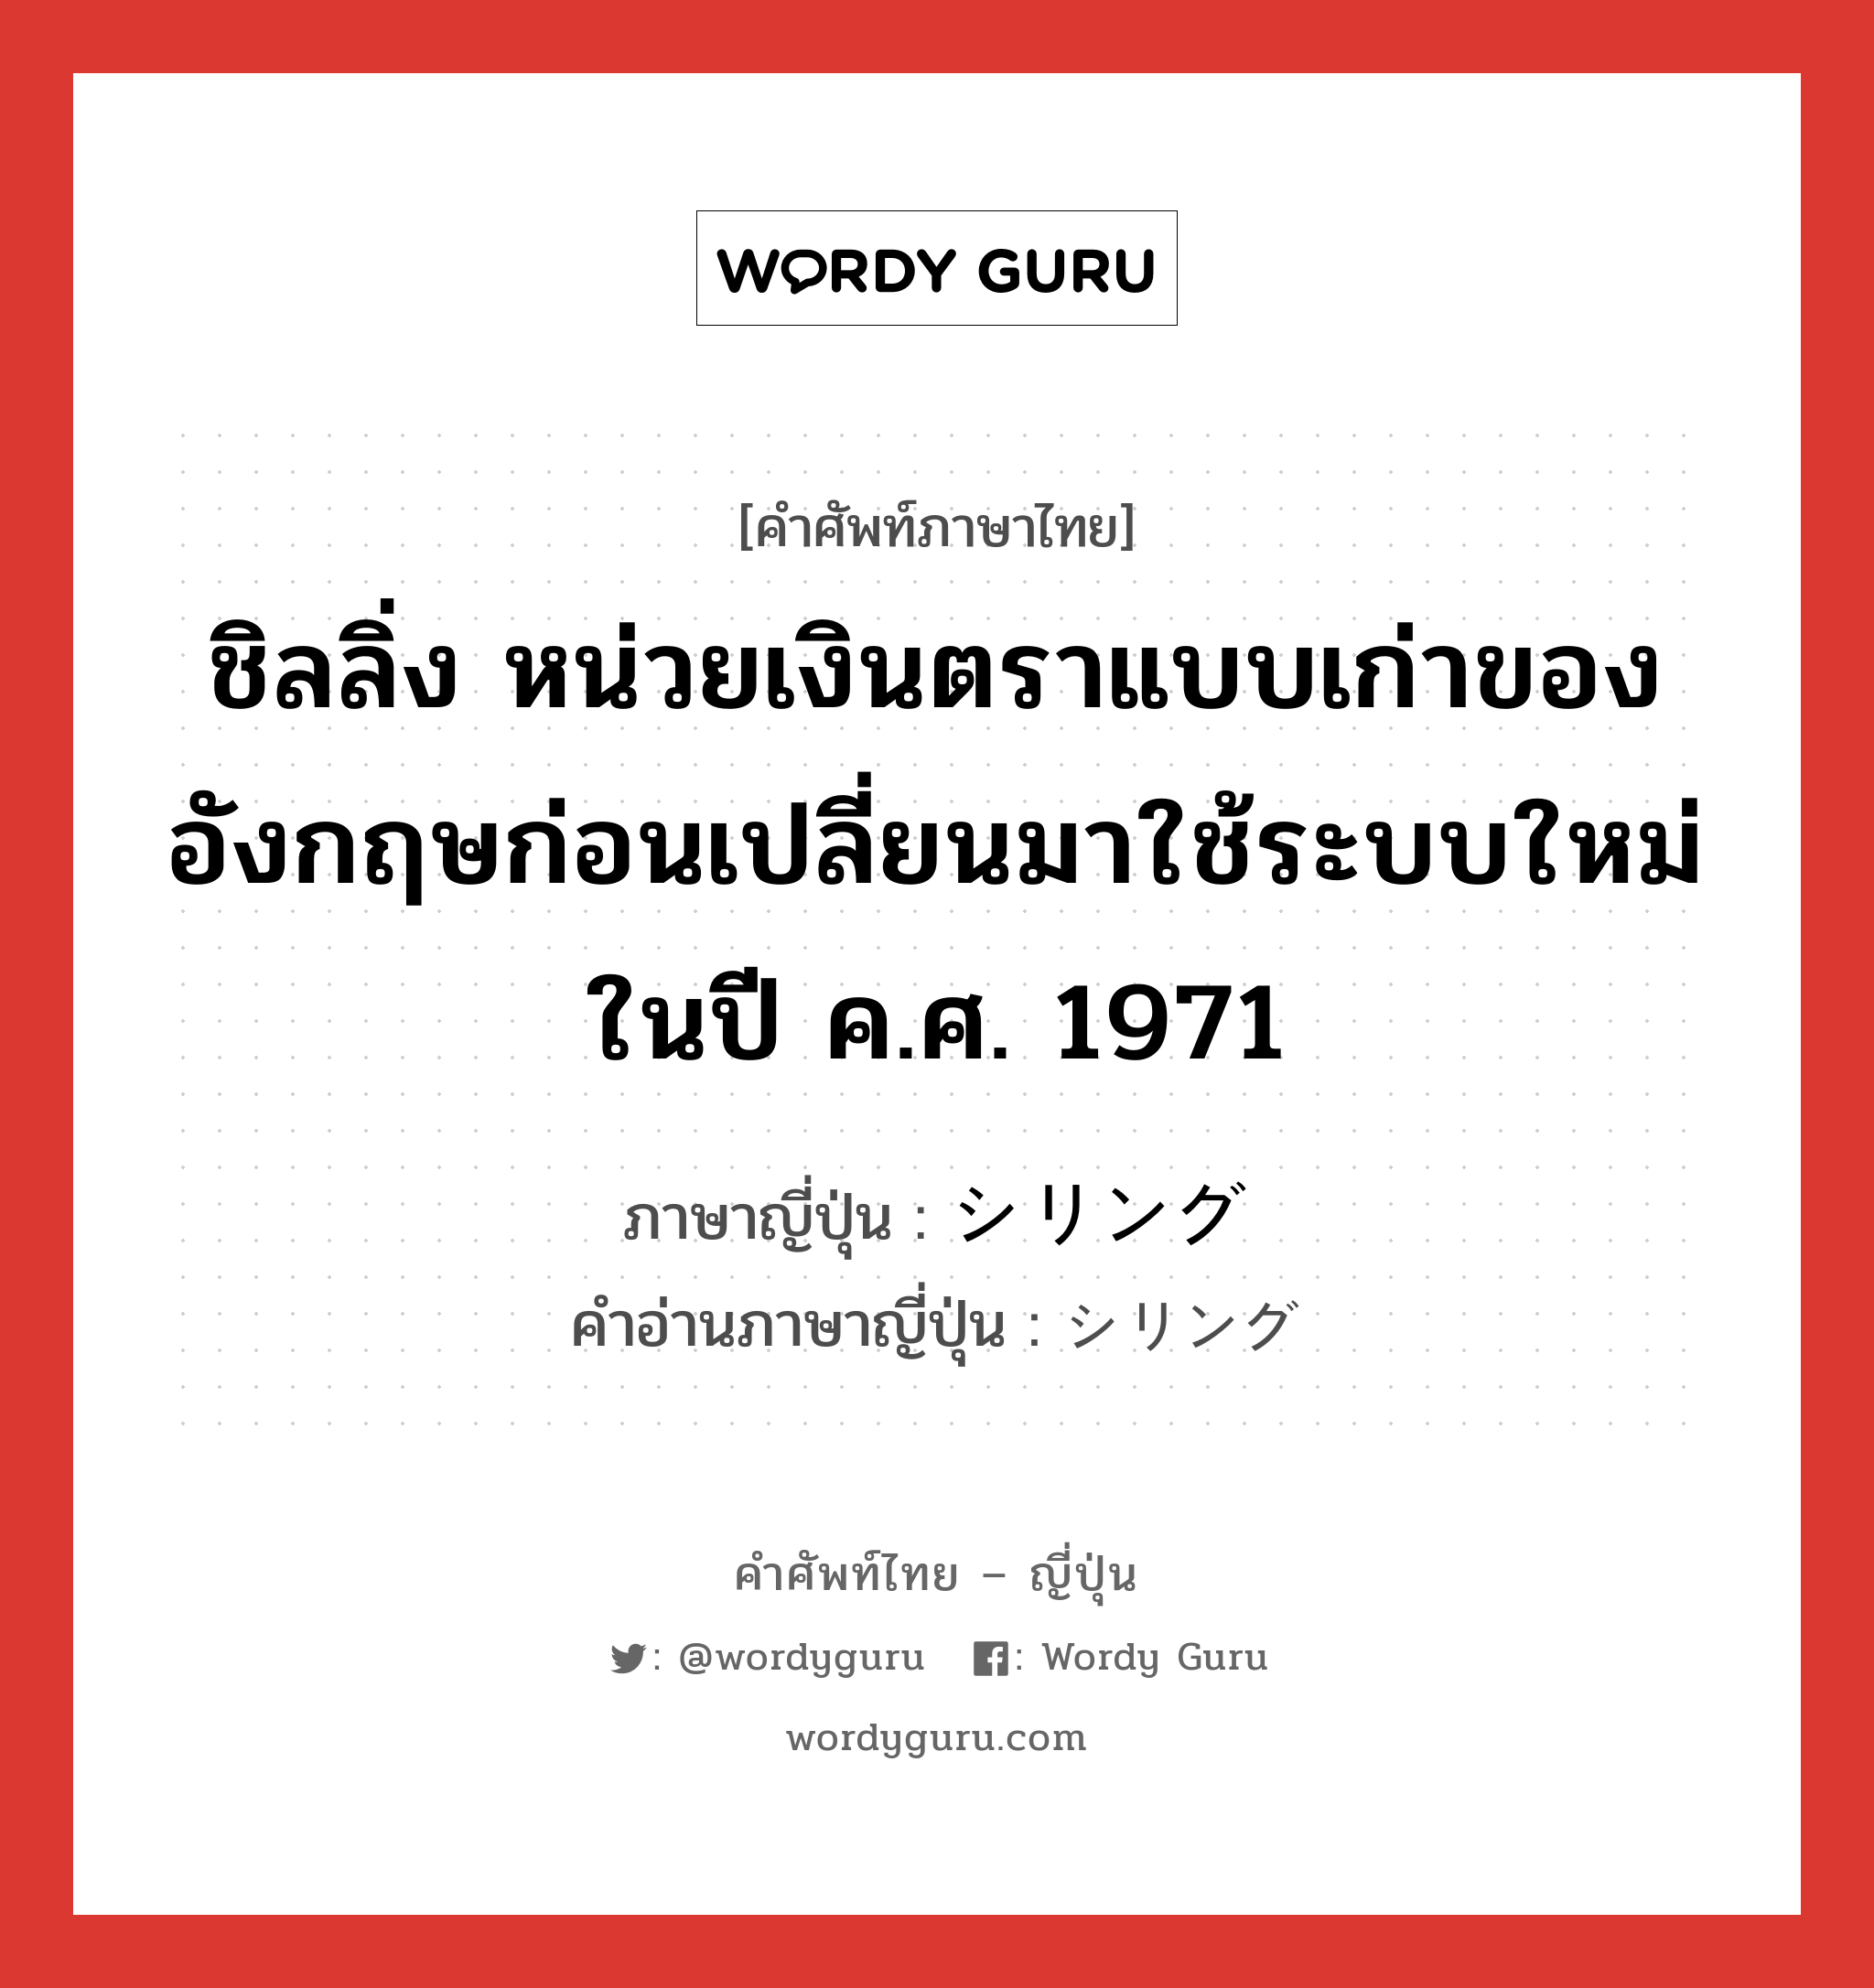 ชิลลิ่ง หน่วยเงินตราแบบเก่าของอังกฤษก่อนเปลี่ยนมาใช้ระบบใหม่ในปี ค.ศ. 1971 ภาษาญี่ปุ่นคืออะไร, คำศัพท์ภาษาไทย - ญี่ปุ่น ชิลลิ่ง หน่วยเงินตราแบบเก่าของอังกฤษก่อนเปลี่ยนมาใช้ระบบใหม่ในปี ค.ศ. 1971 ภาษาญี่ปุ่น シリング คำอ่านภาษาญี่ปุ่น シリング หมวด n หมวด n